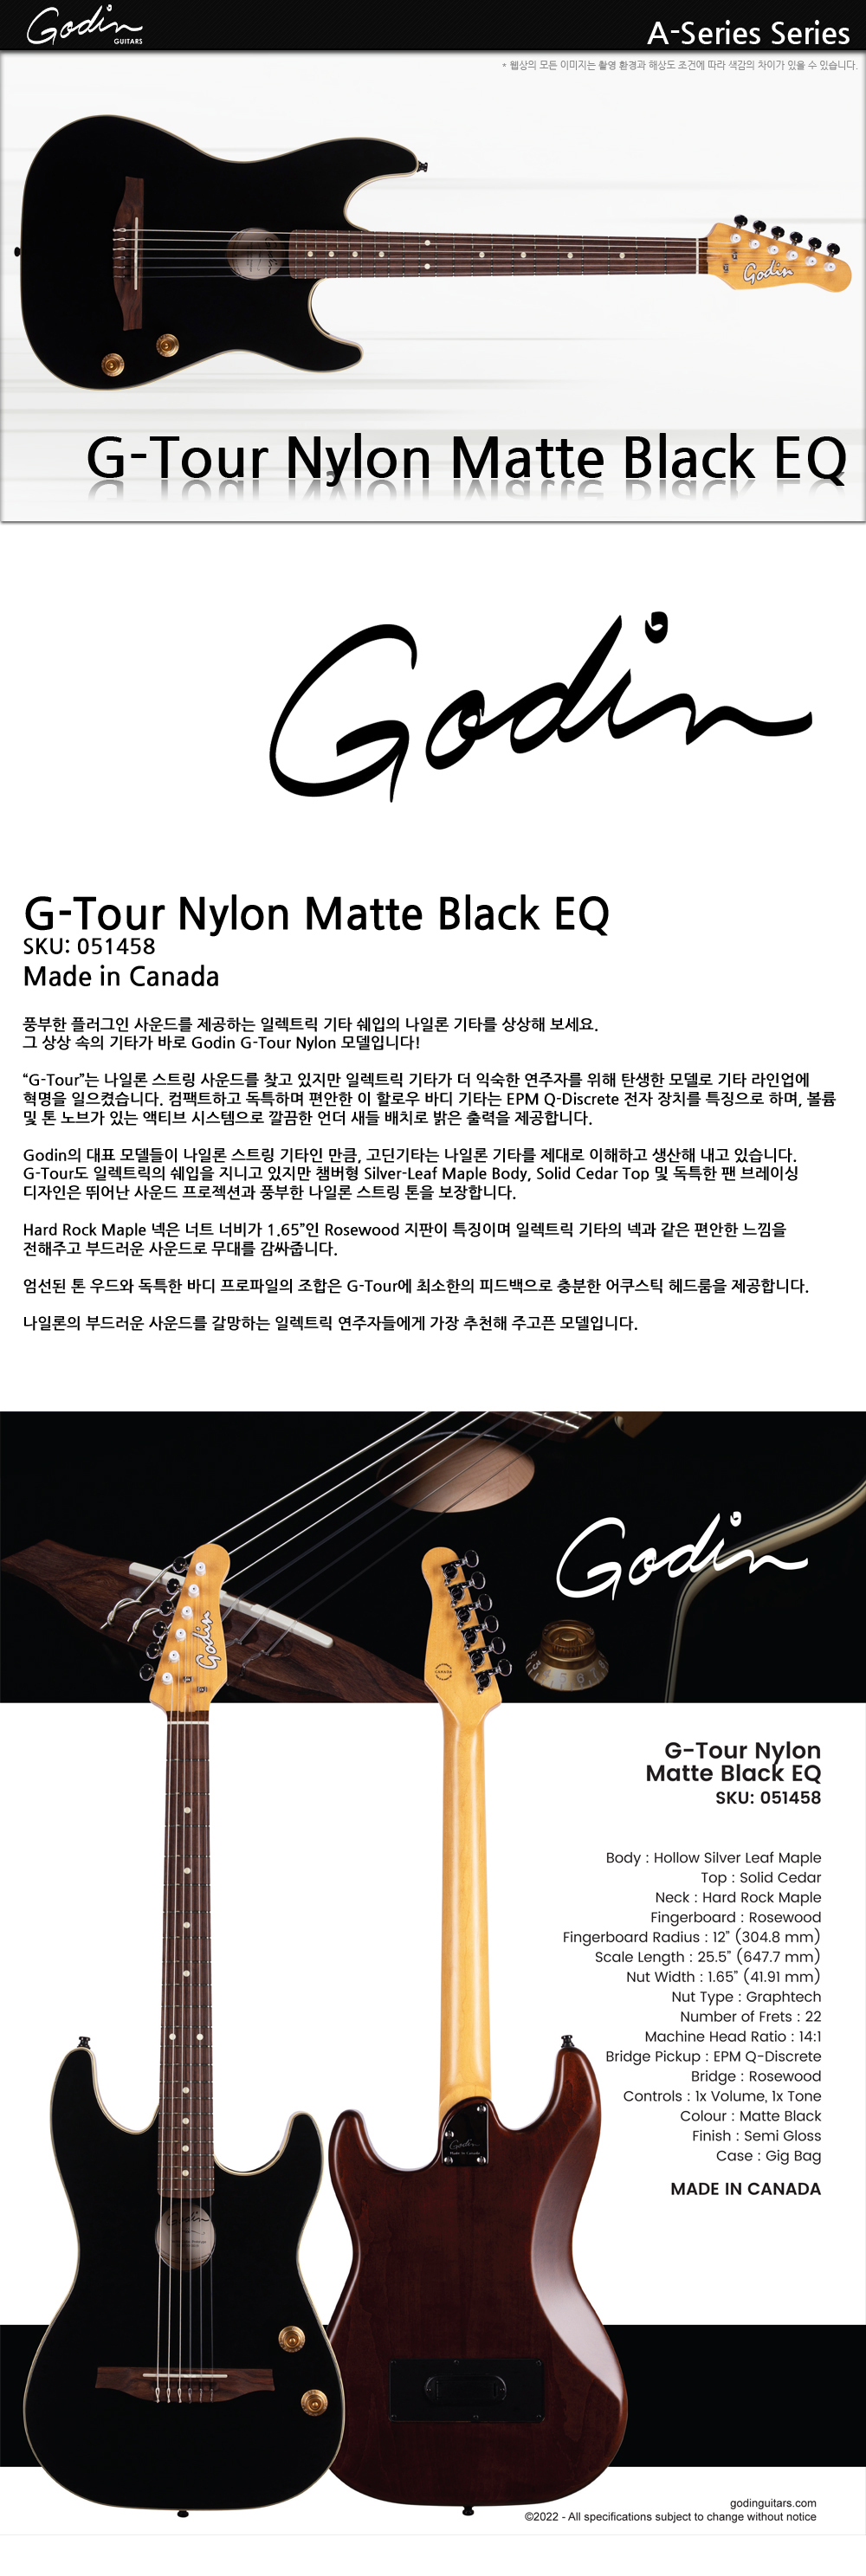 Godin-051458-A-Series-G-Tour-Nylon-MatteBlack-EQ_1_133236.jpg